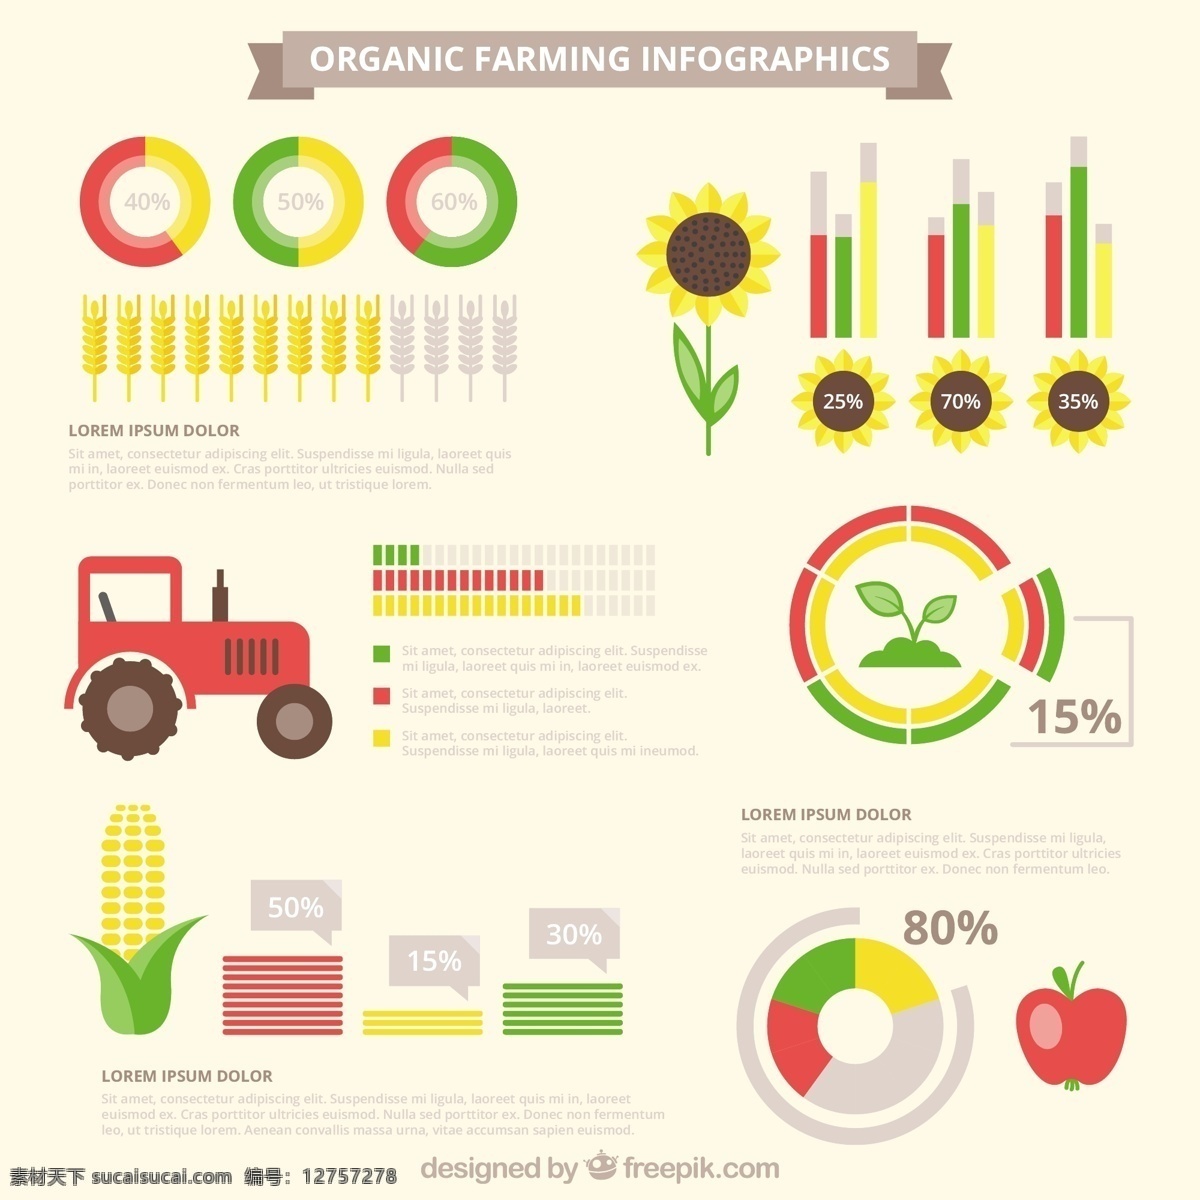 有机 infography 图表 元素 食品 手工 自然 手绘 苹果 蔬菜 图形 生态 能源 图 信息 流程 数据 健康 图表元素 白色